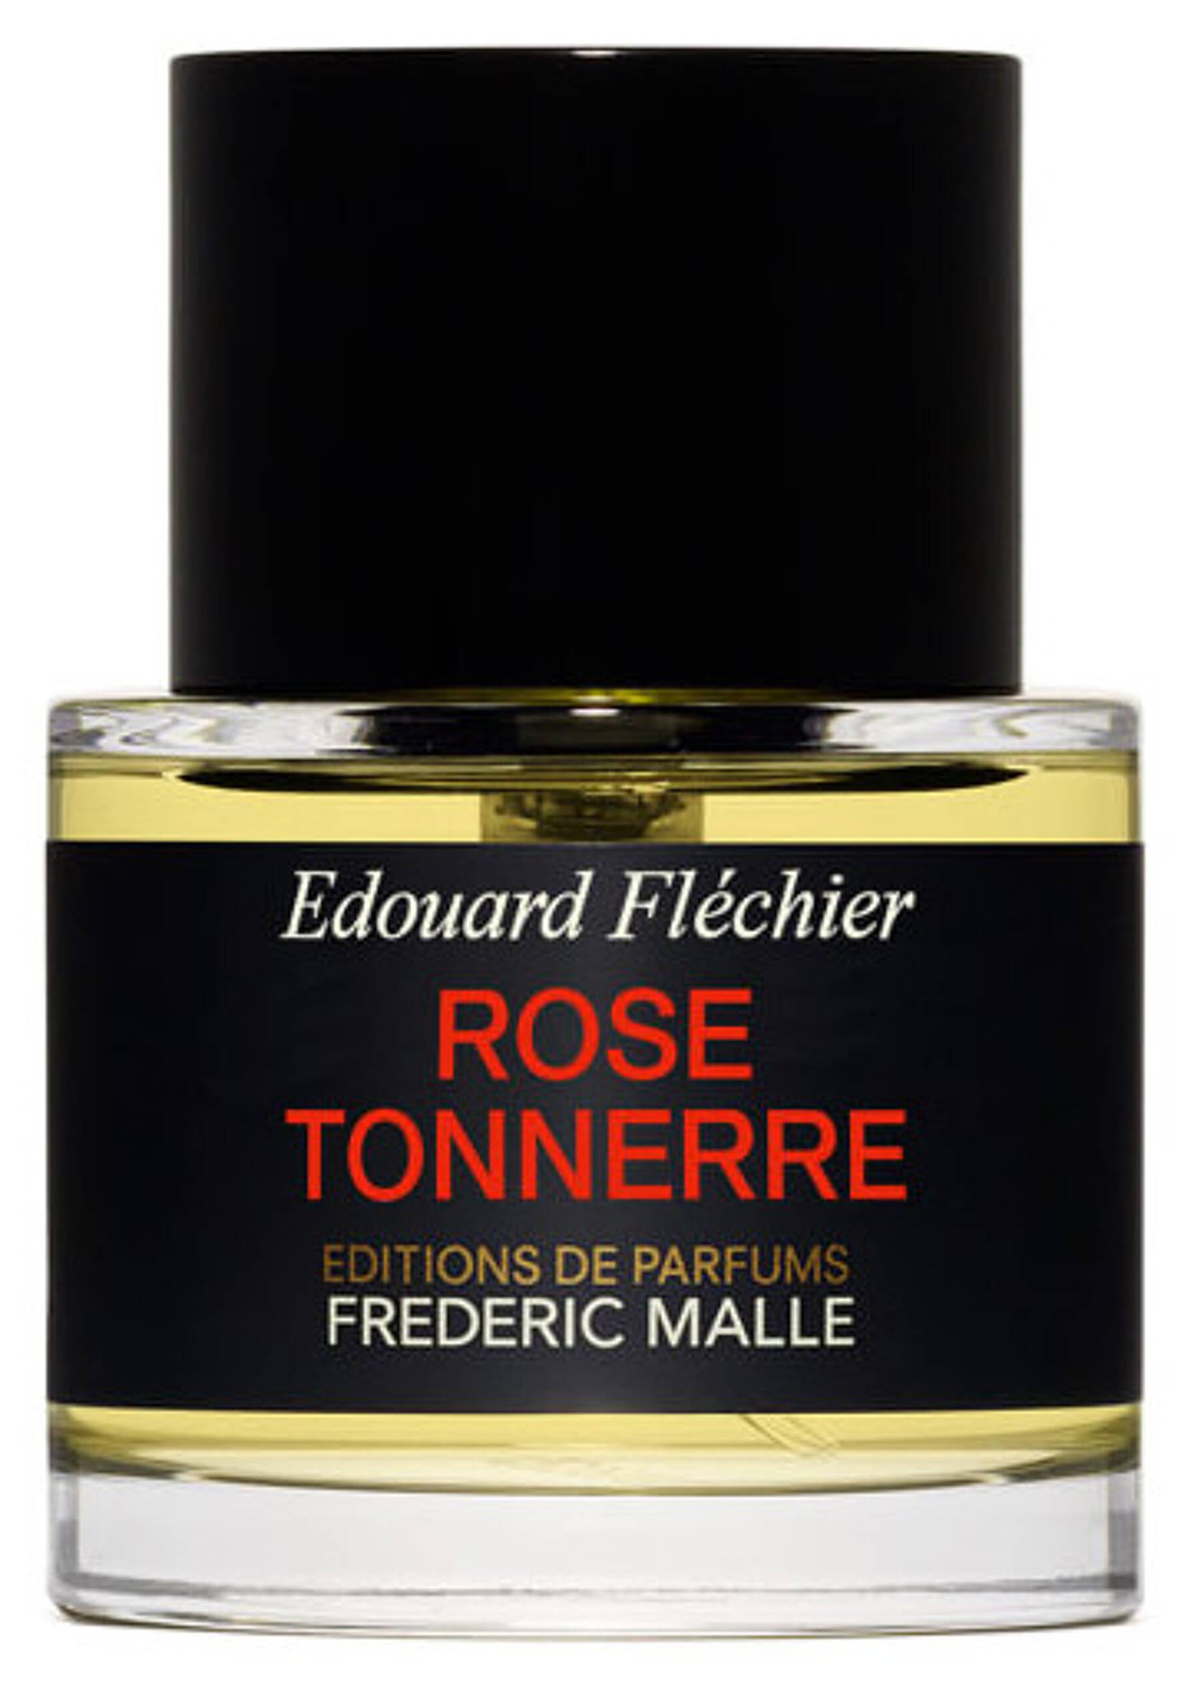 Rose Tonnerre (Editions de Parfums Frédéric Malle)